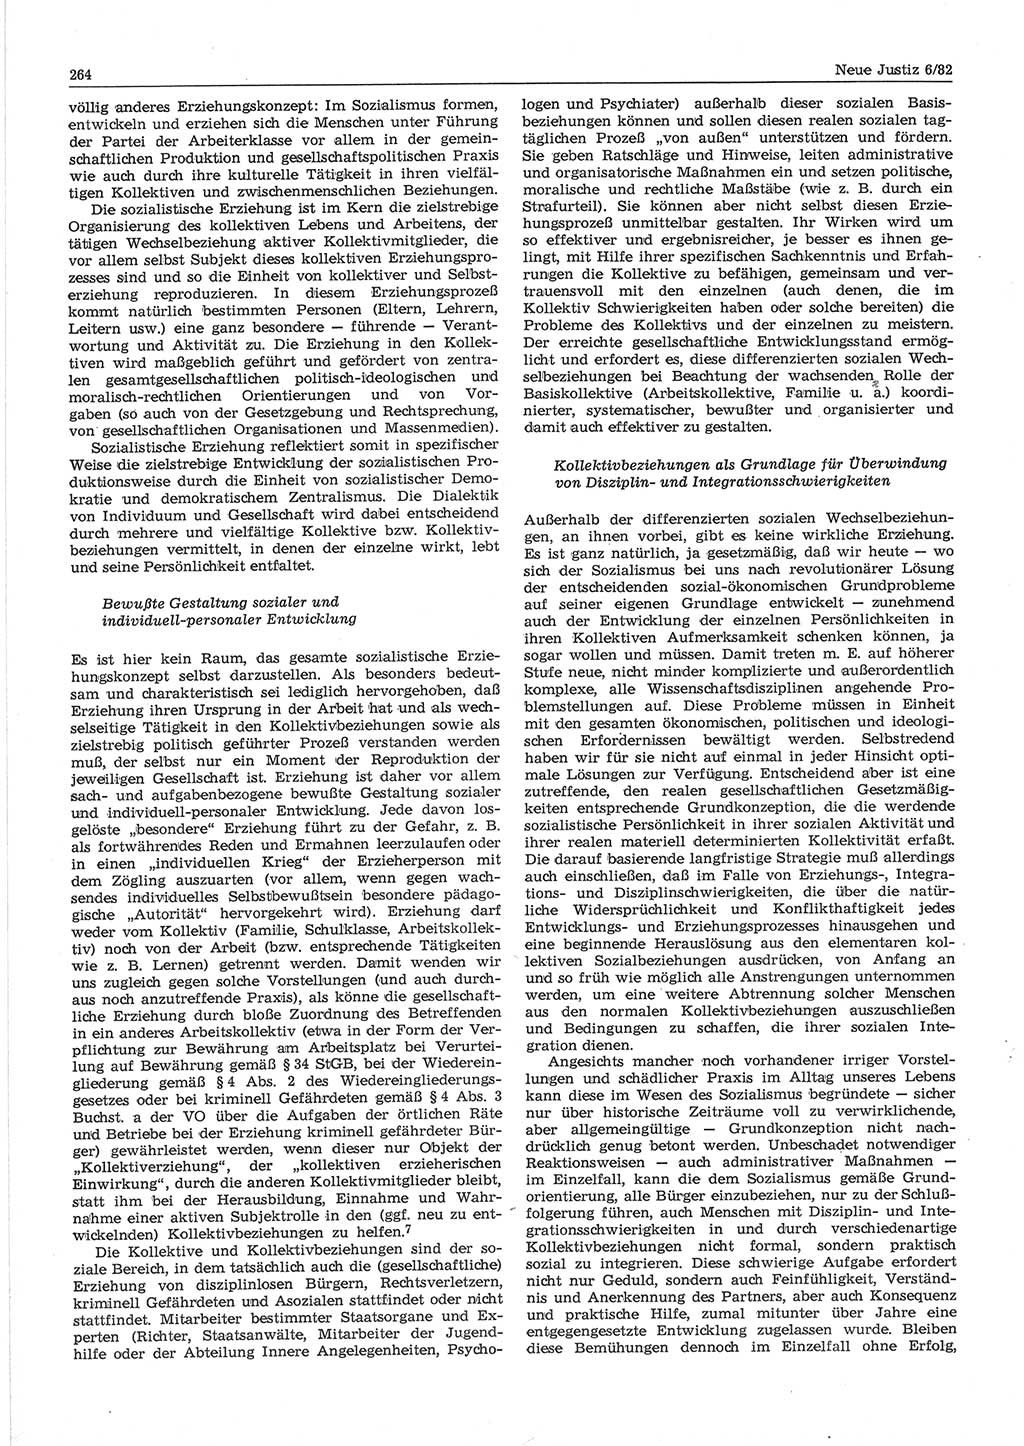 Neue Justiz (NJ), Zeitschrift für sozialistisches Recht und Gesetzlichkeit [Deutsche Demokratische Republik (DDR)], 36. Jahrgang 1982, Seite 264 (NJ DDR 1982, S. 264)